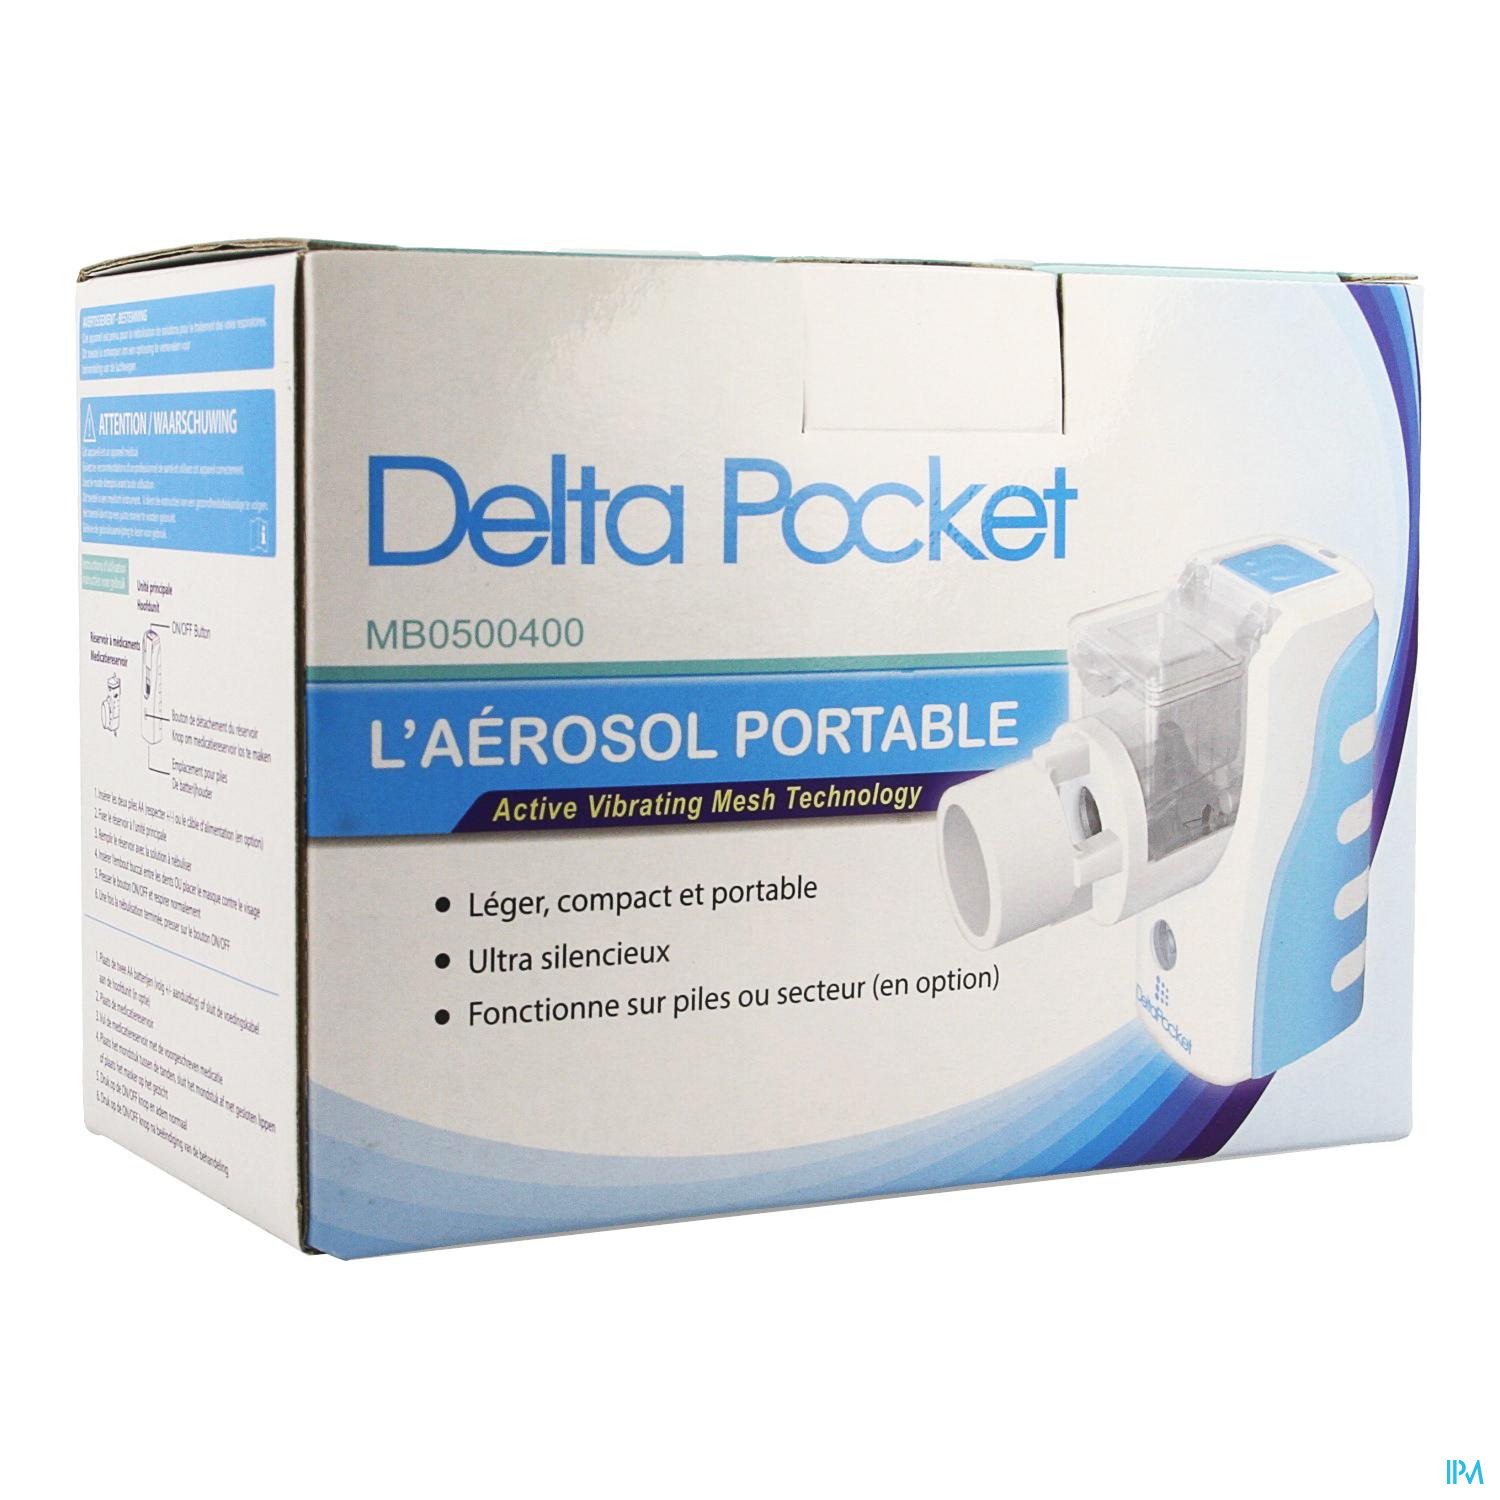 Delta Pocket Aerosol est un aerosol portable pour votre confort